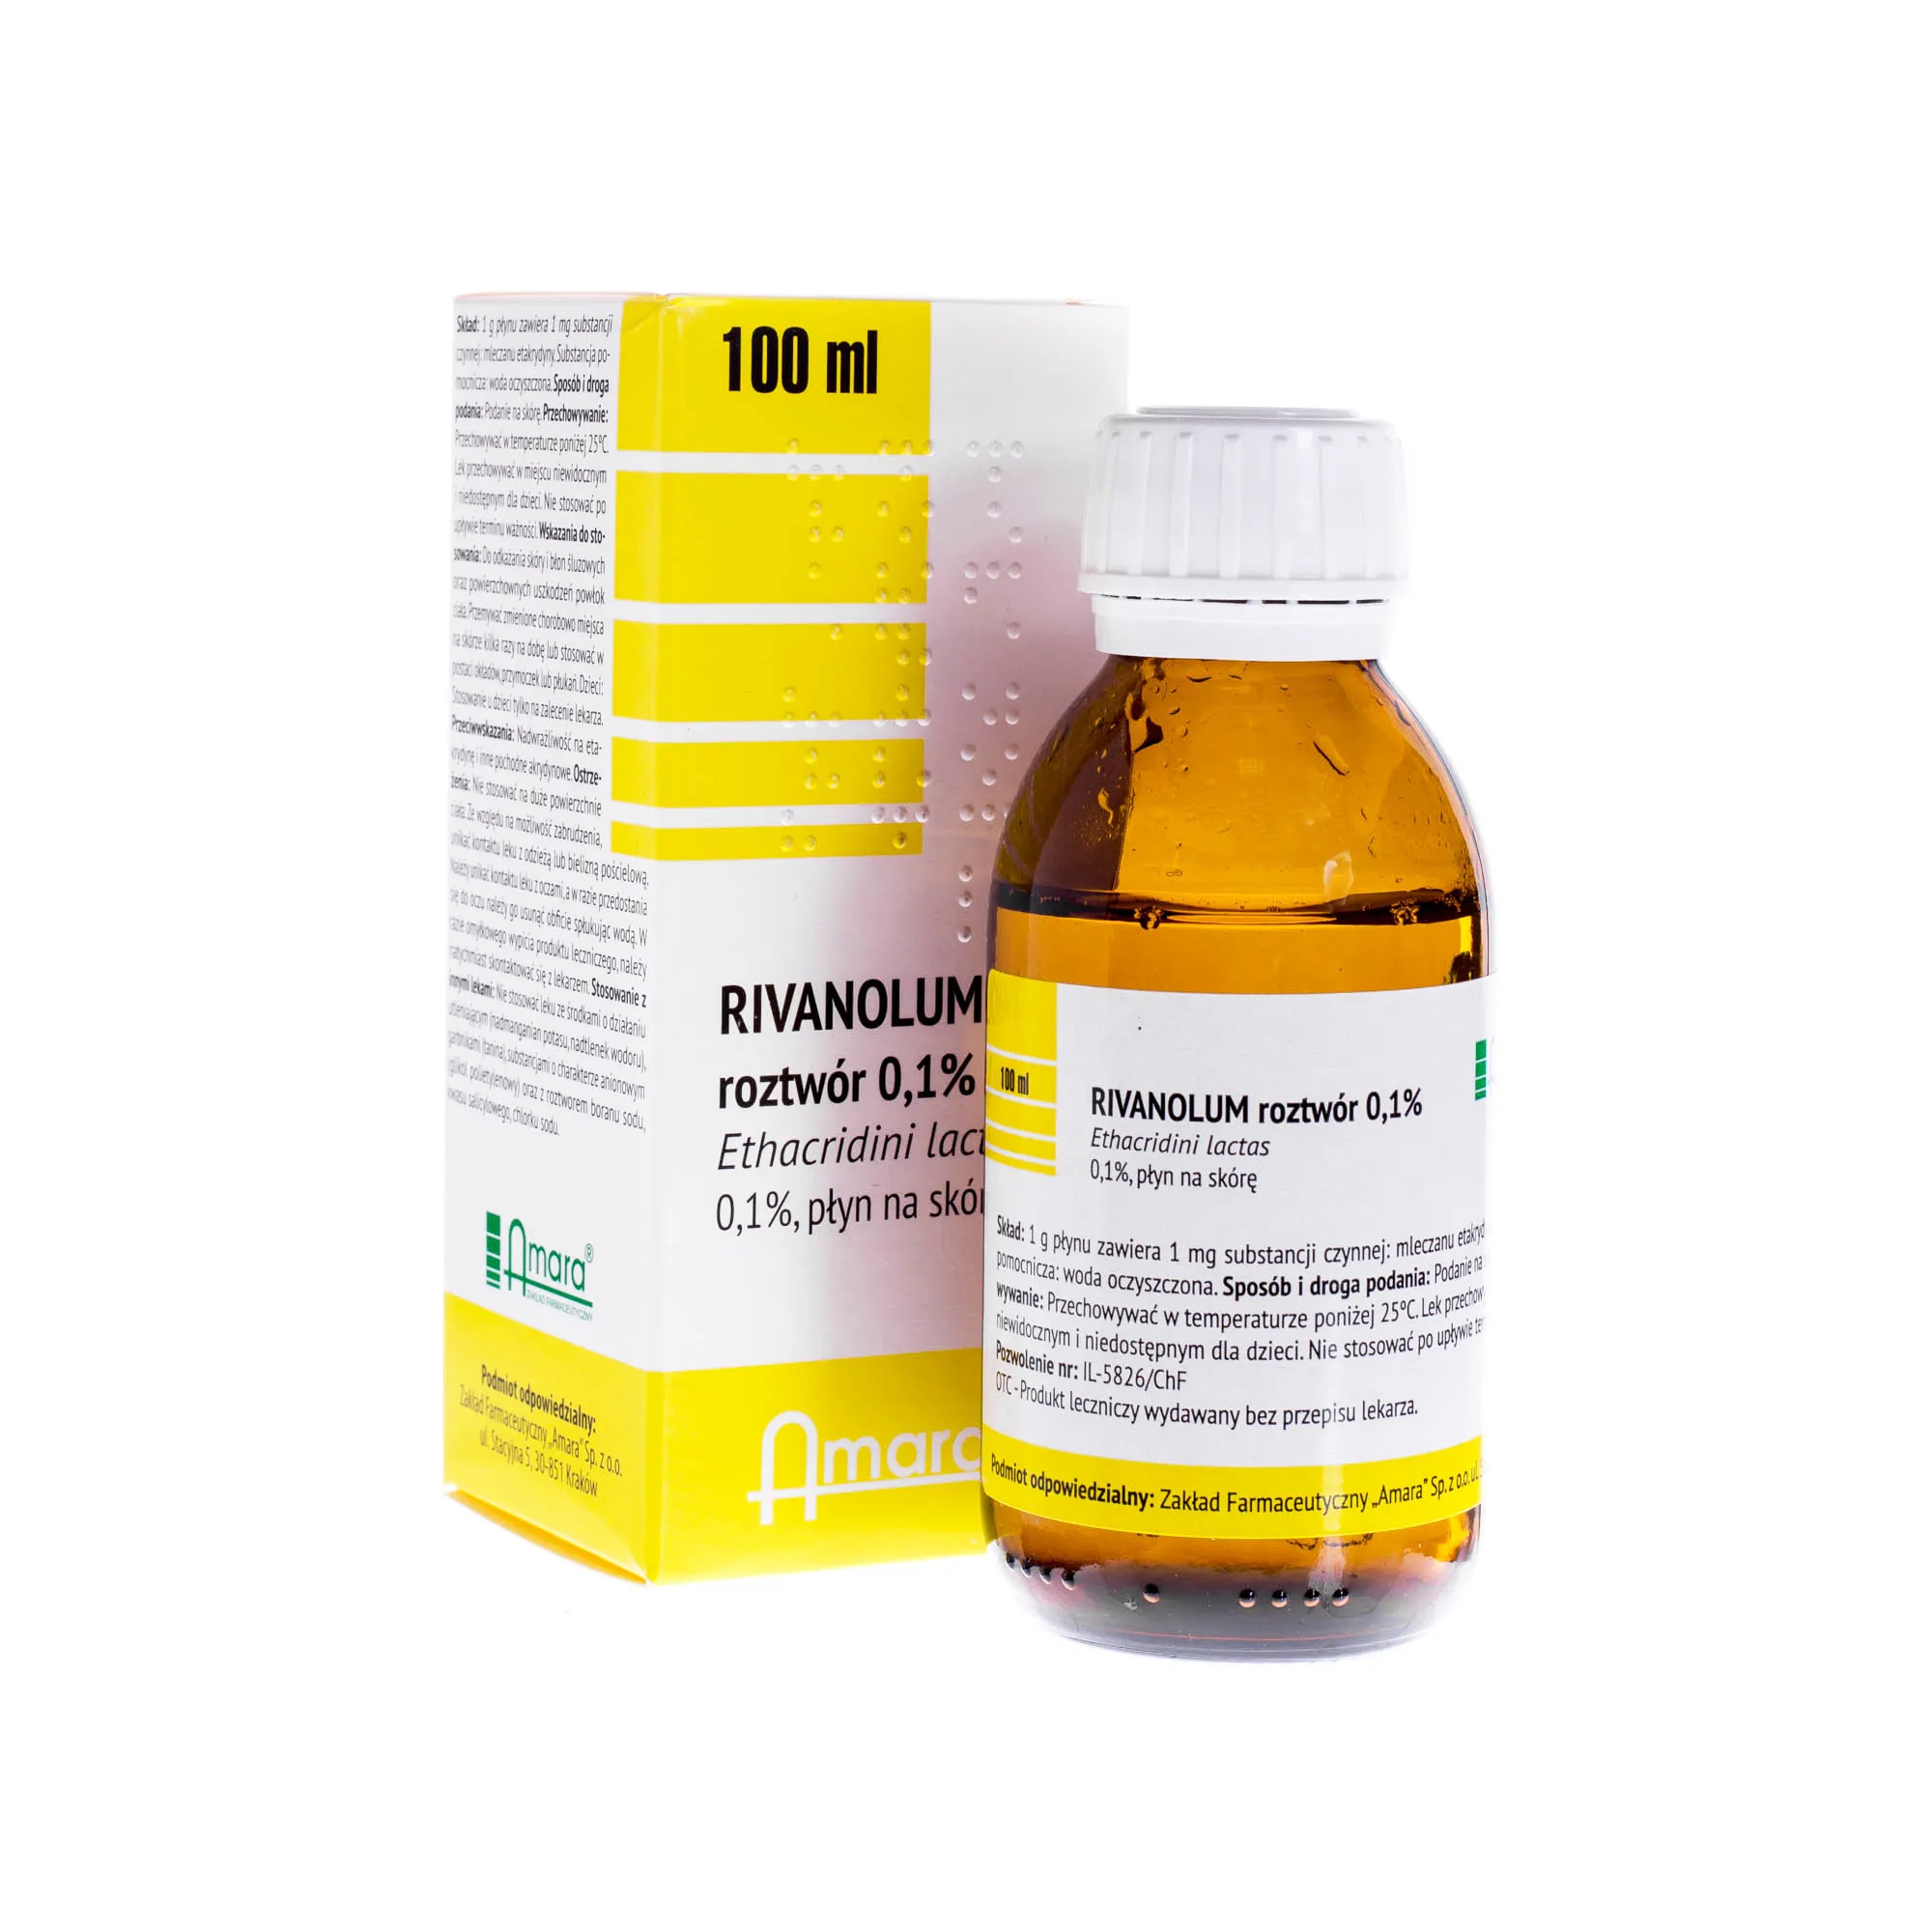 Rivanolum 0,1% - płyn na skórę, 100 ml